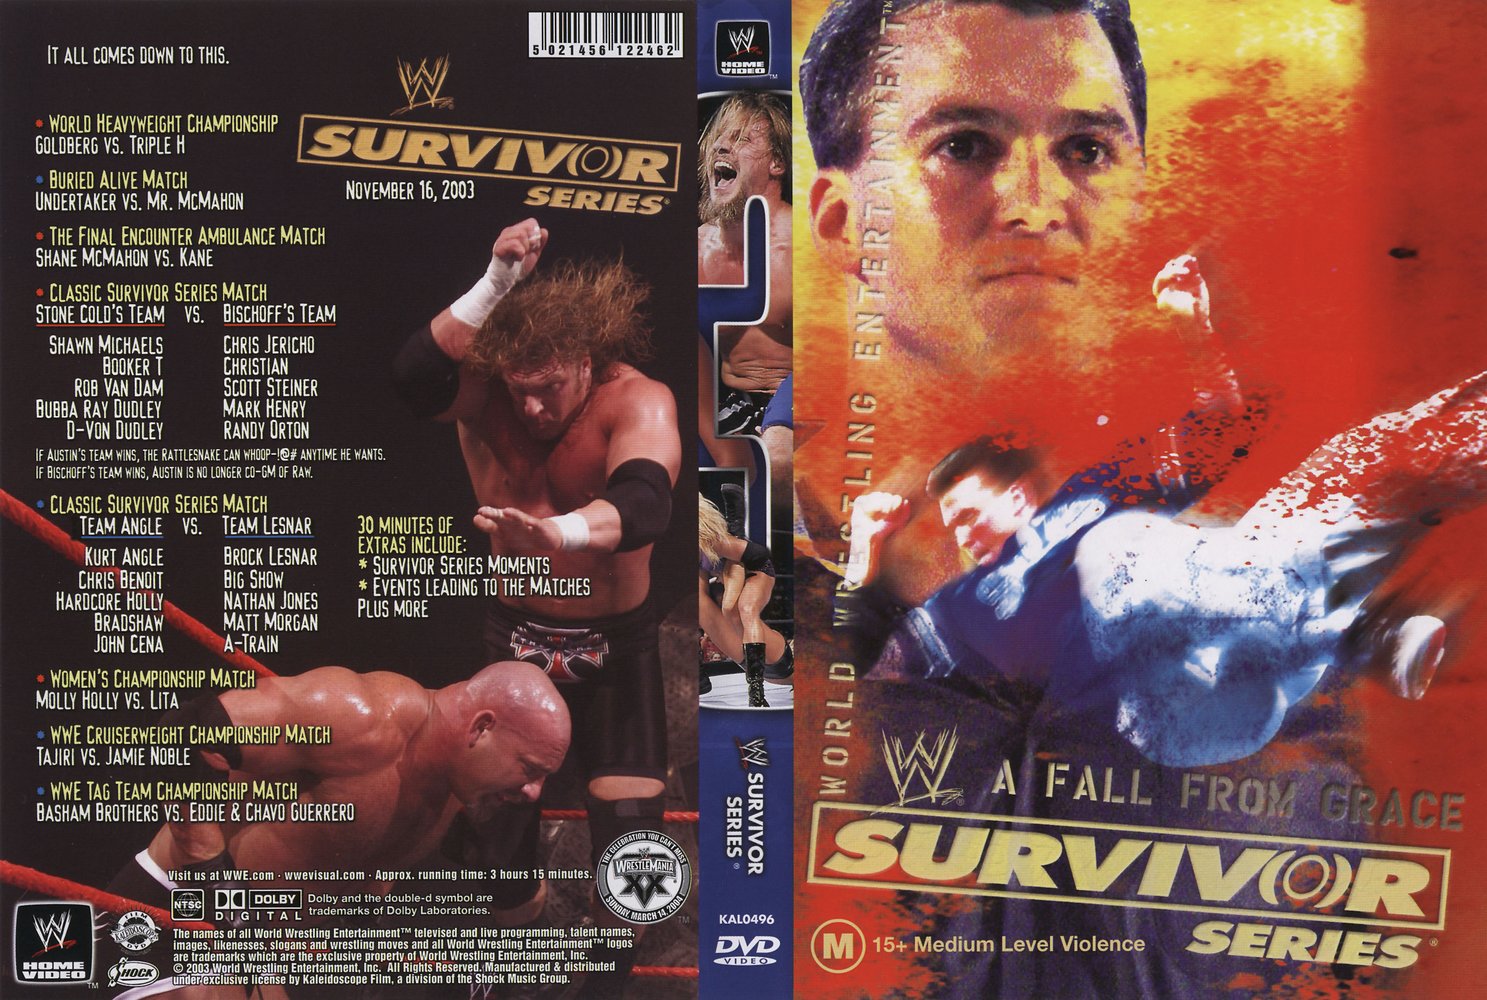 WWE Survivor Series 2003 movie